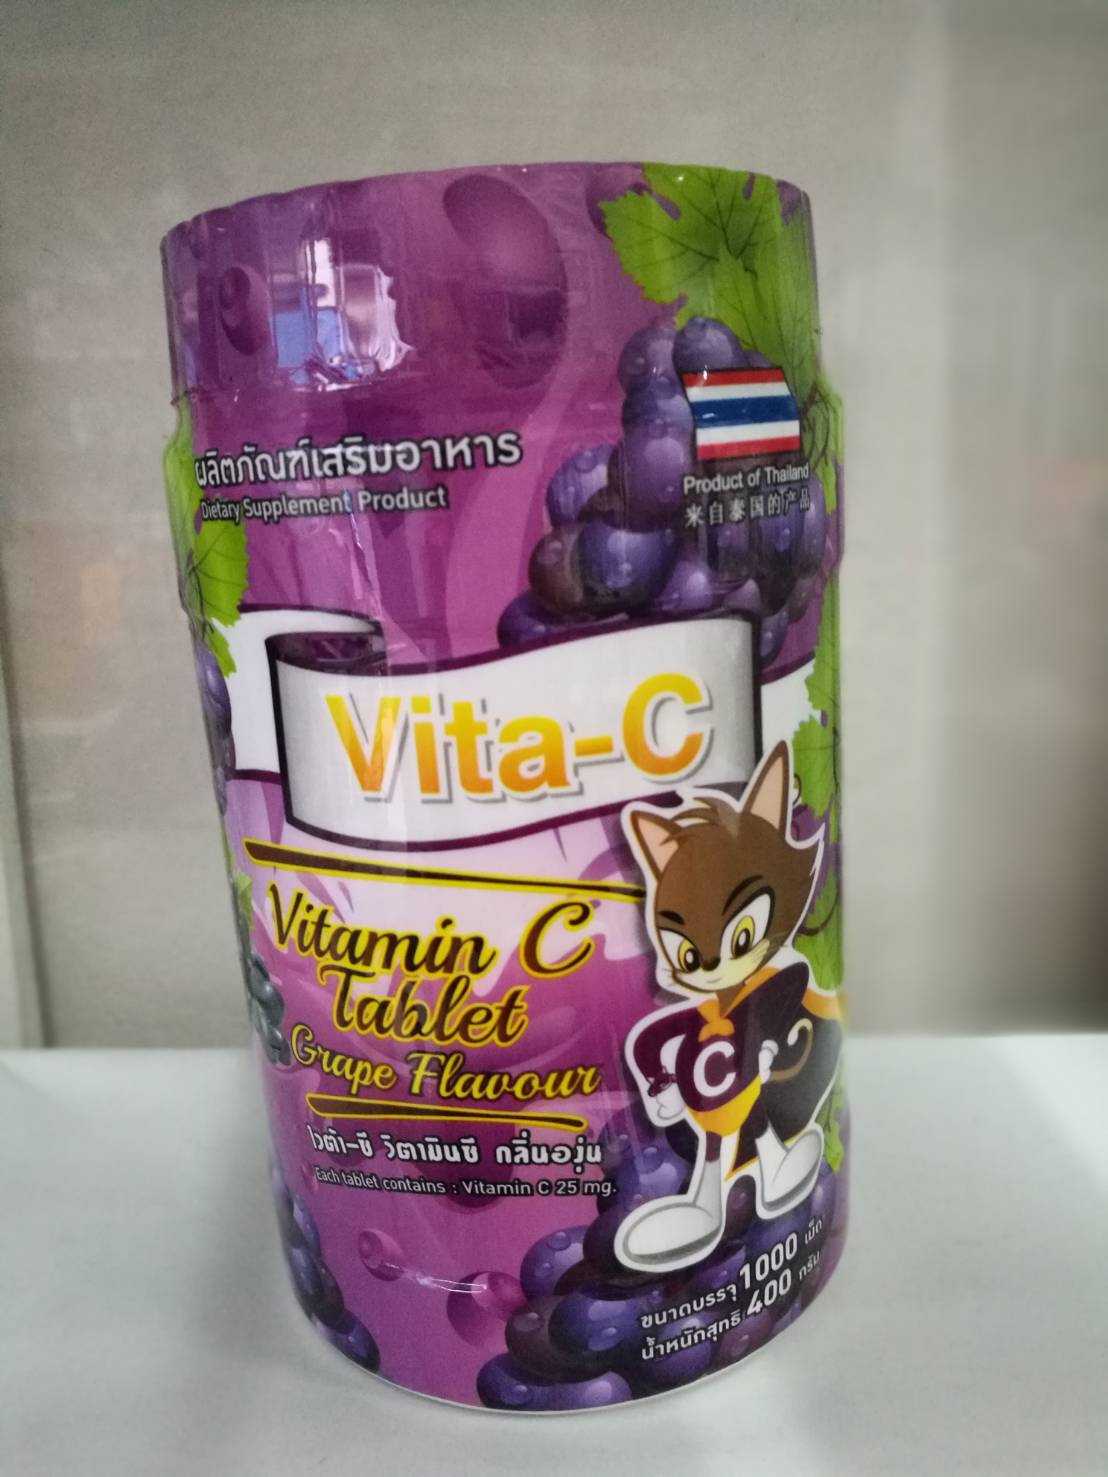 ไวต้า-ซี Vita-C Vitamin C Tablet วิตามินซี 1000 เม็ด กระปุก รสองุ่น วิตซี vit c